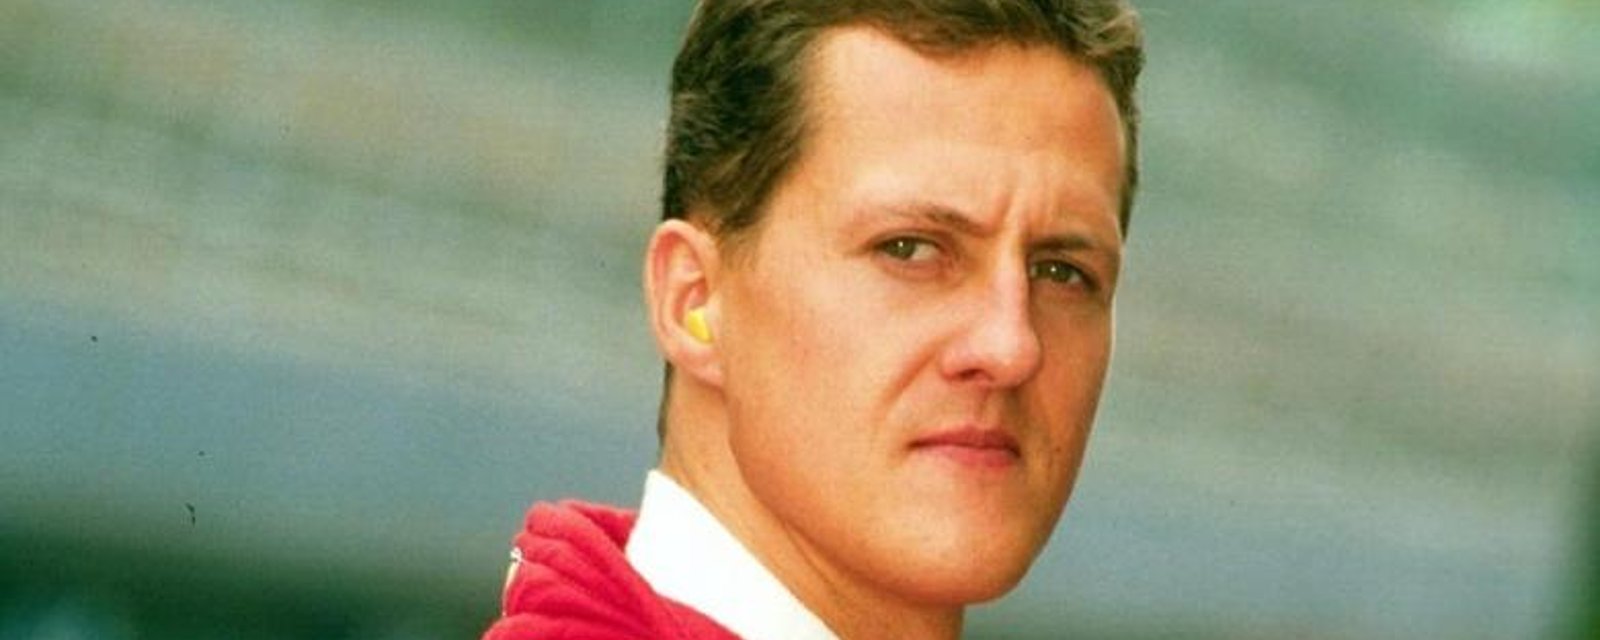 Michael Schumacher serait dans un état critique